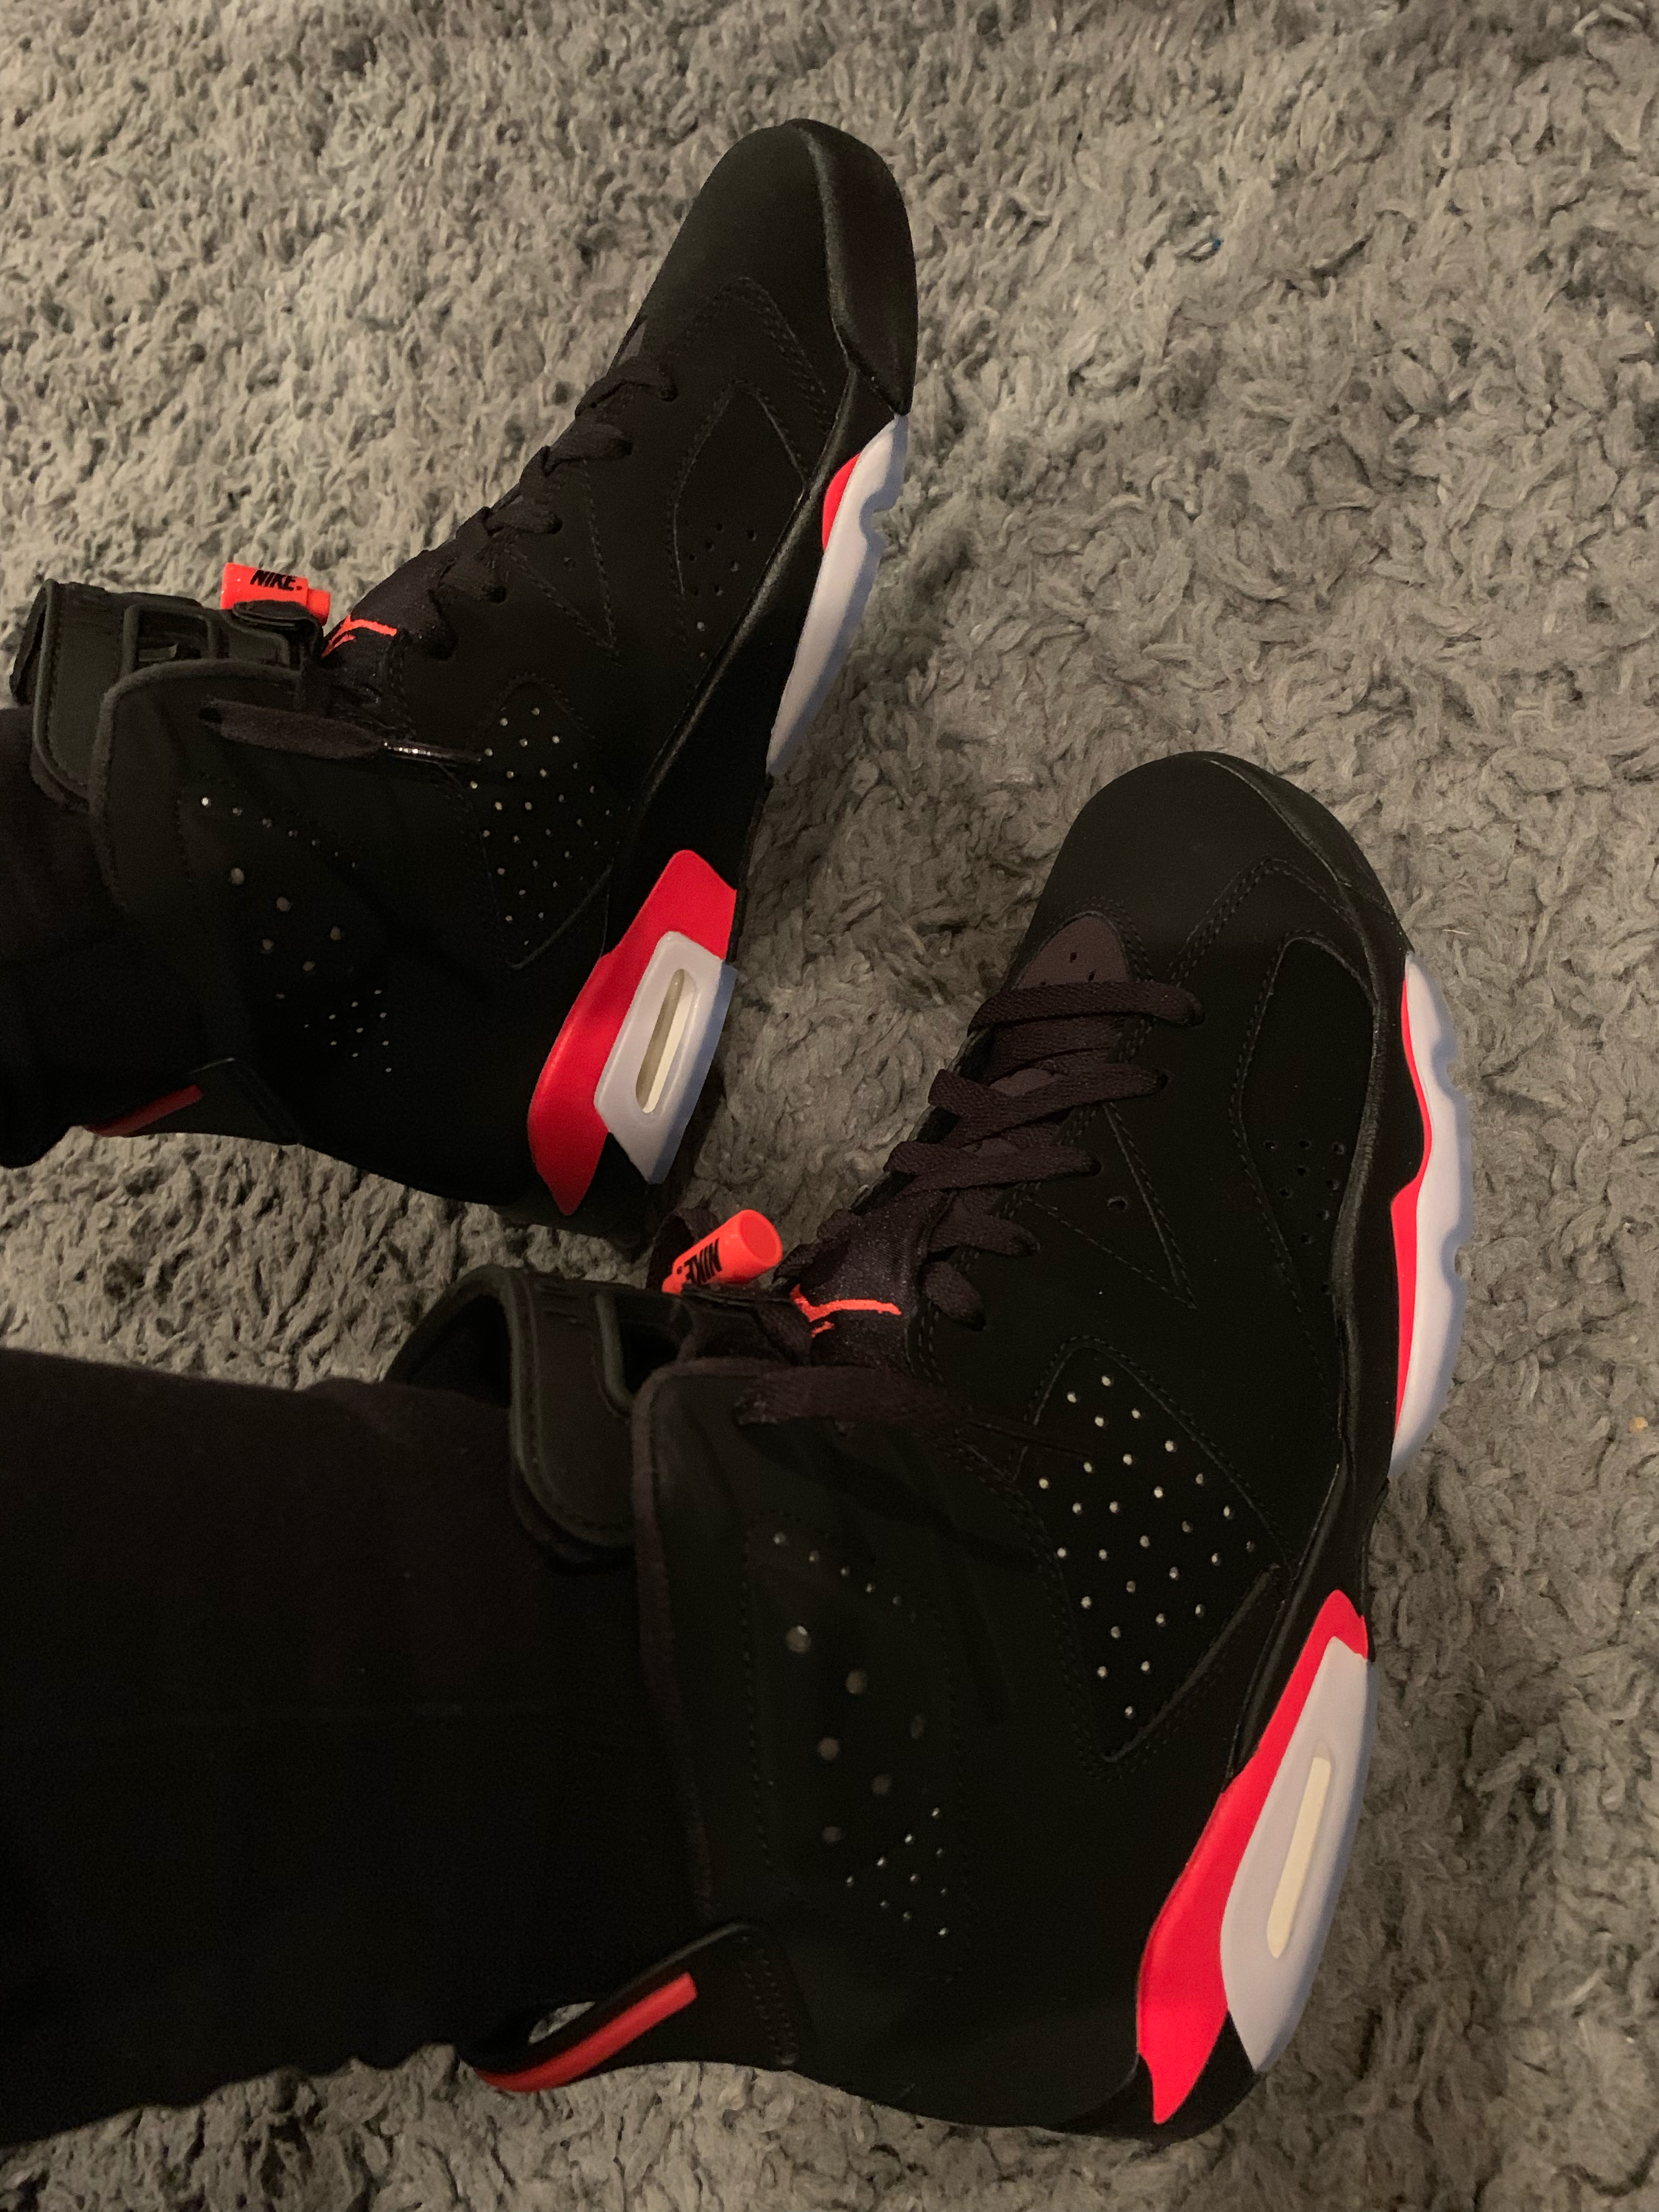 Air Jordan 6 Black Infrared OG 2019